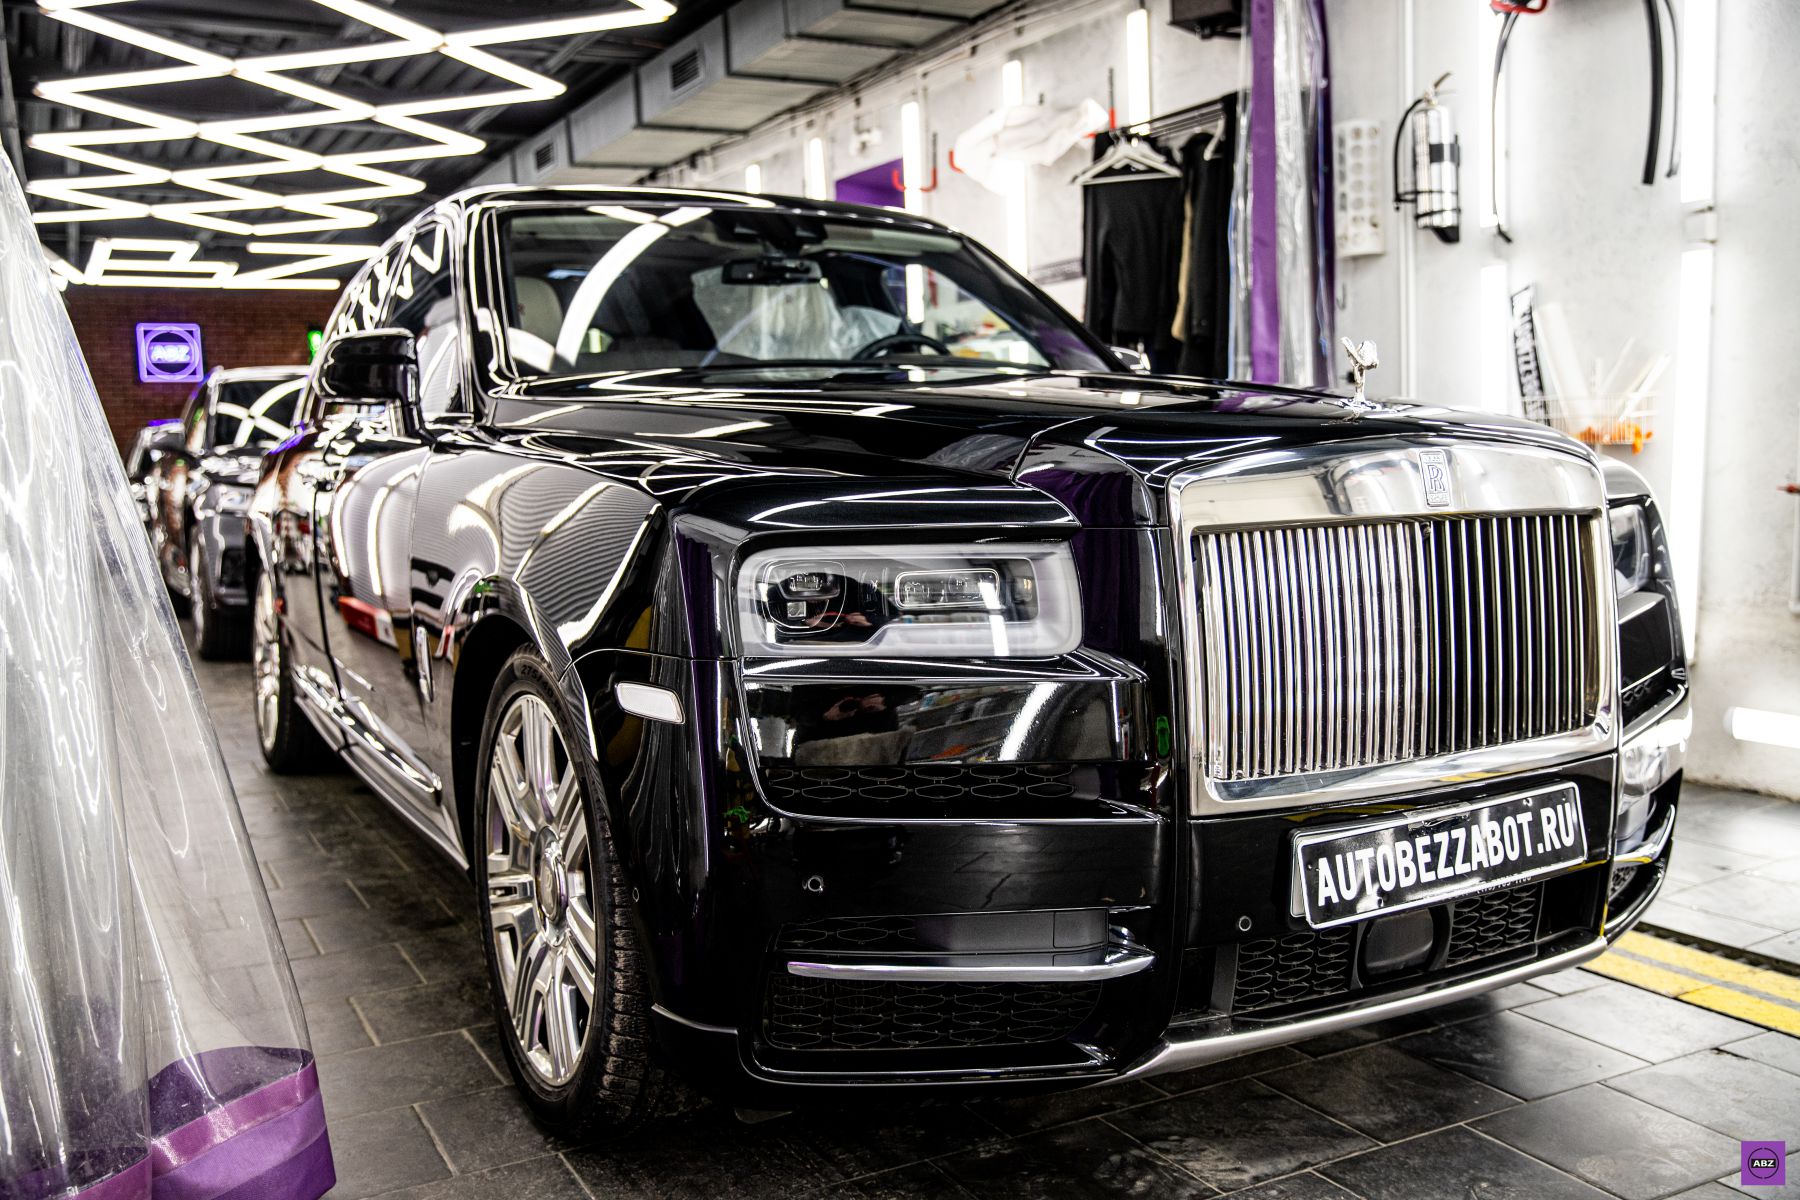 Фото Rolls Royce Cullinan — роскошь, нуждающаяся в надежной защите